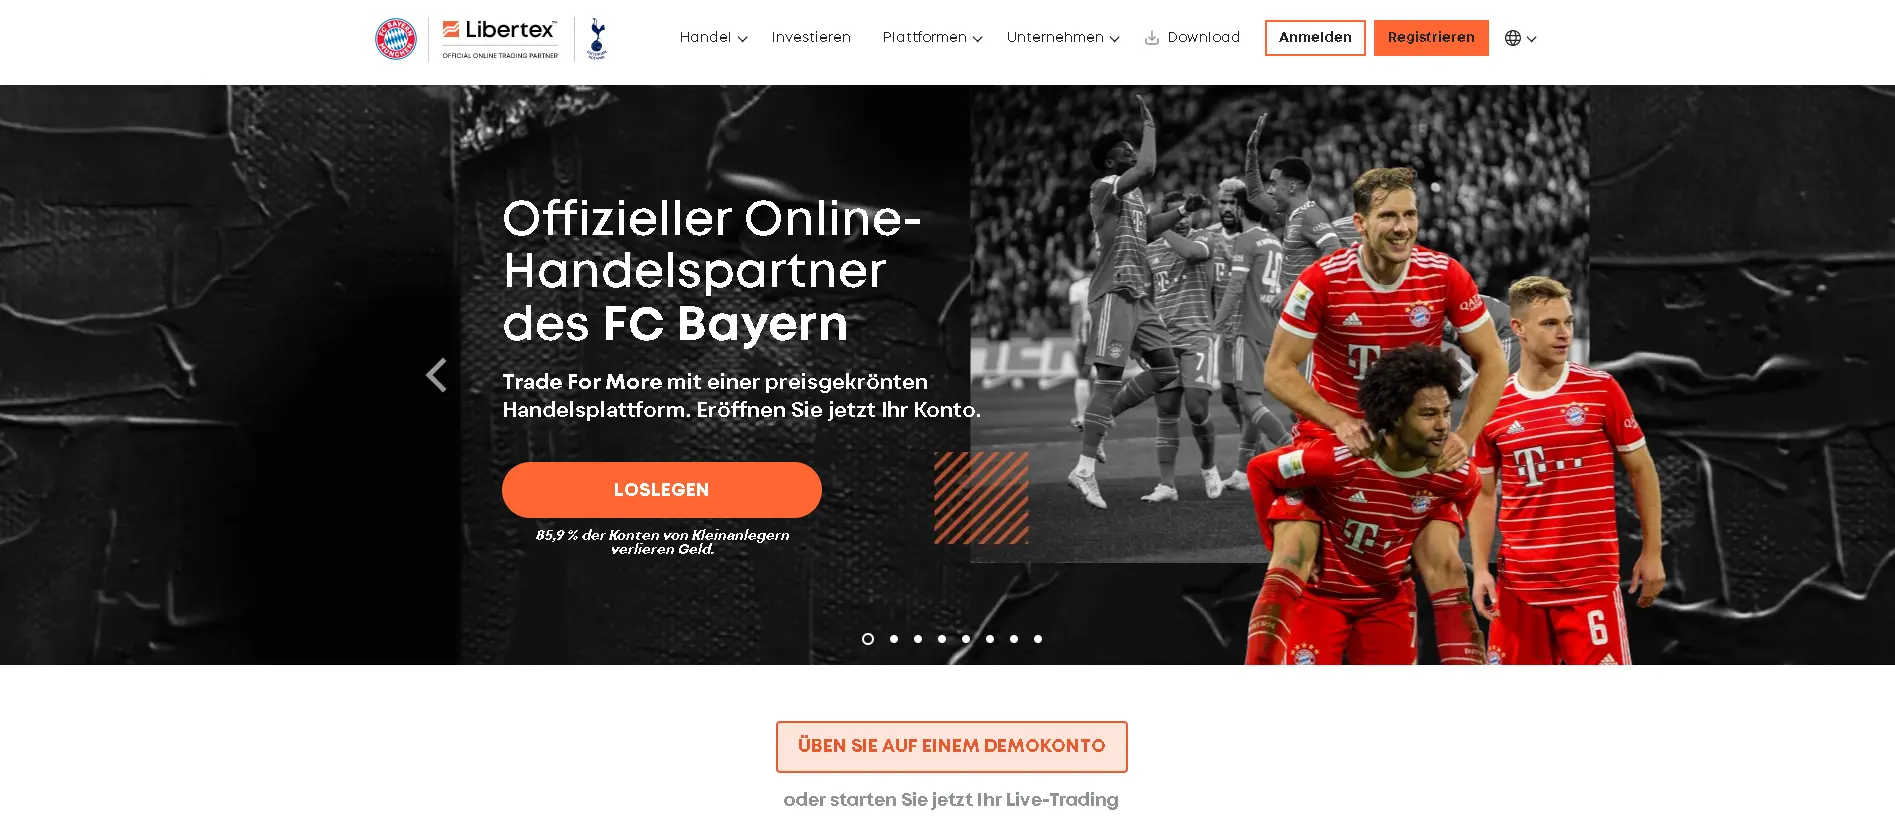 Die Homepage von Libertex: Die Plattform wirbt mit der Bayern München Partnerschaft.